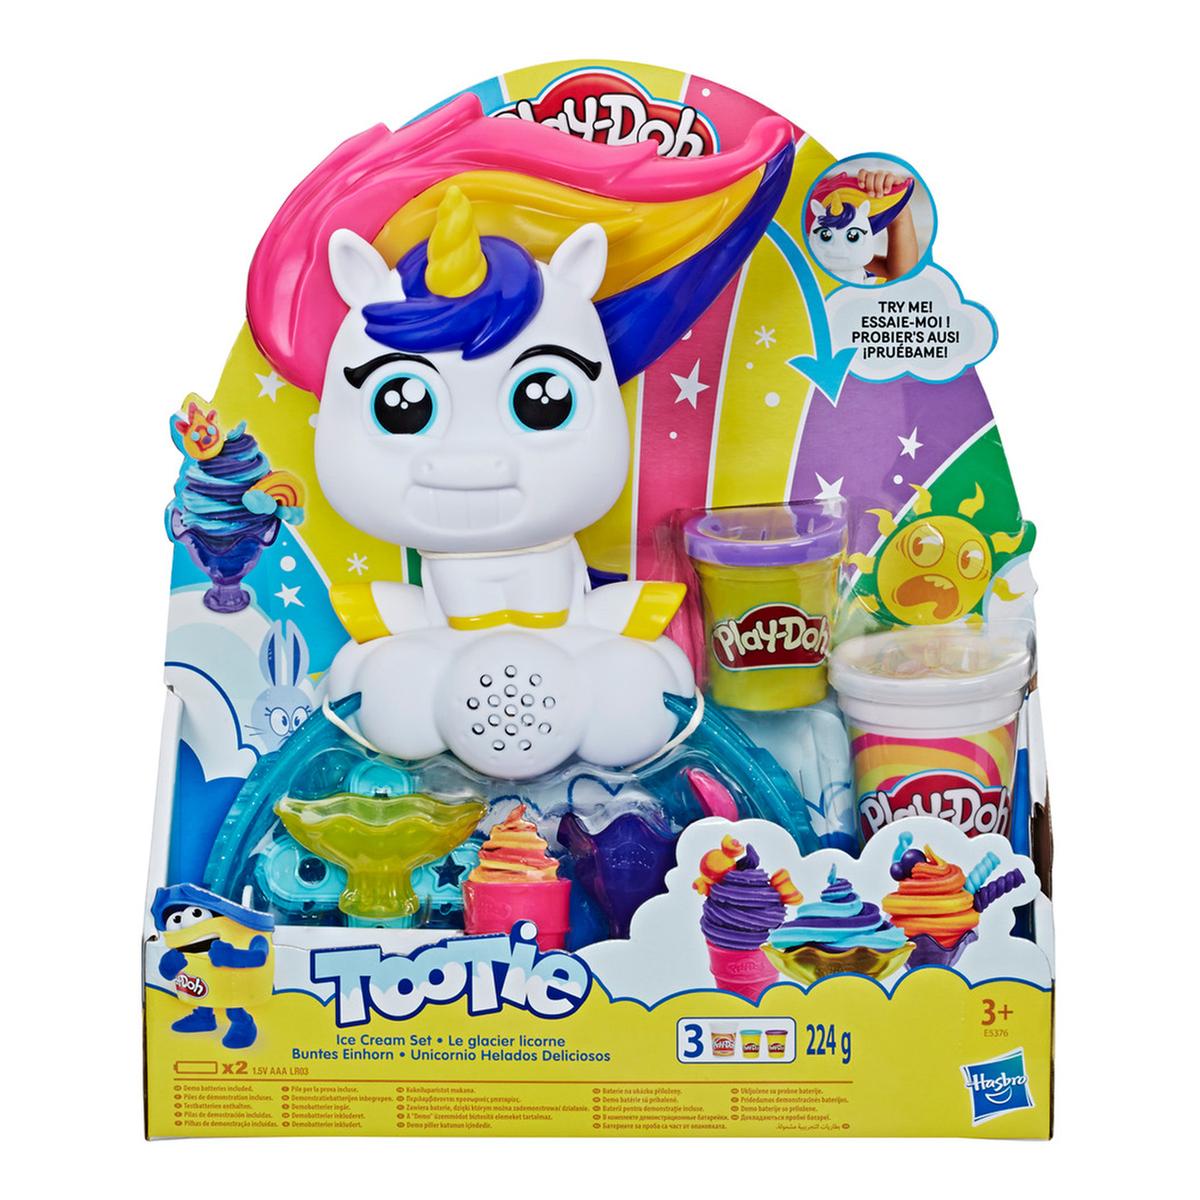 Play-Doh - Tootie la Unicornio | Hasbro | Toys"R"Us España